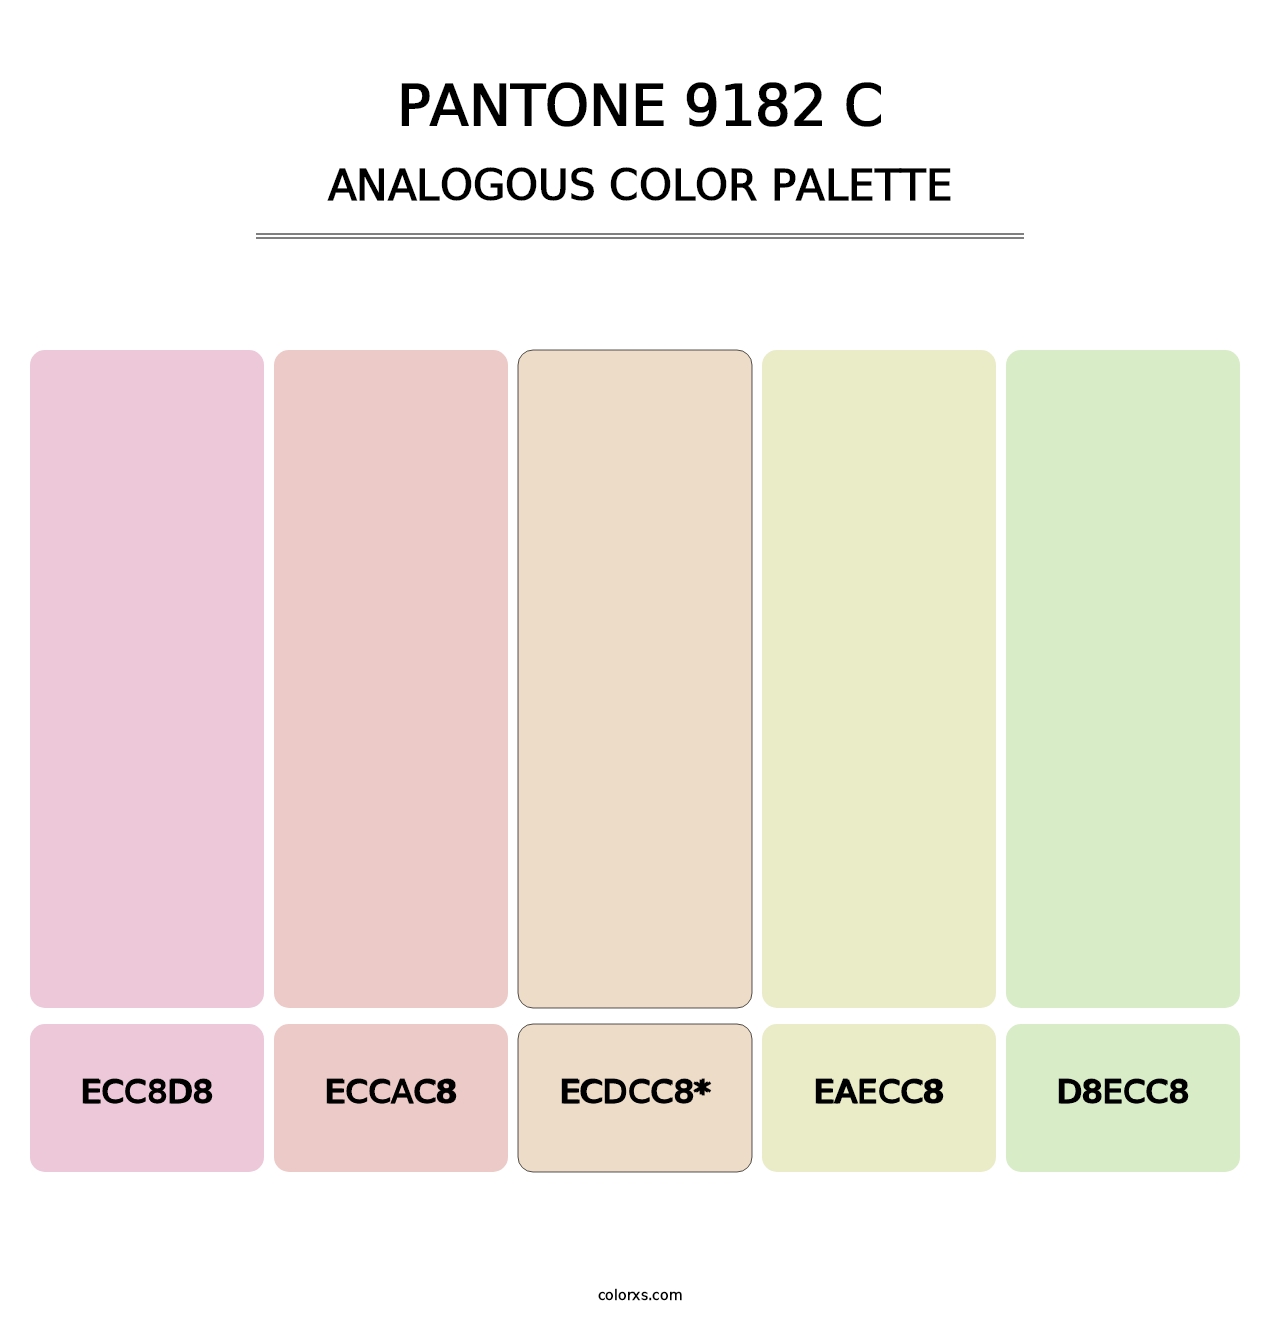 PANTONE 9182 C - Analogous Color Palette